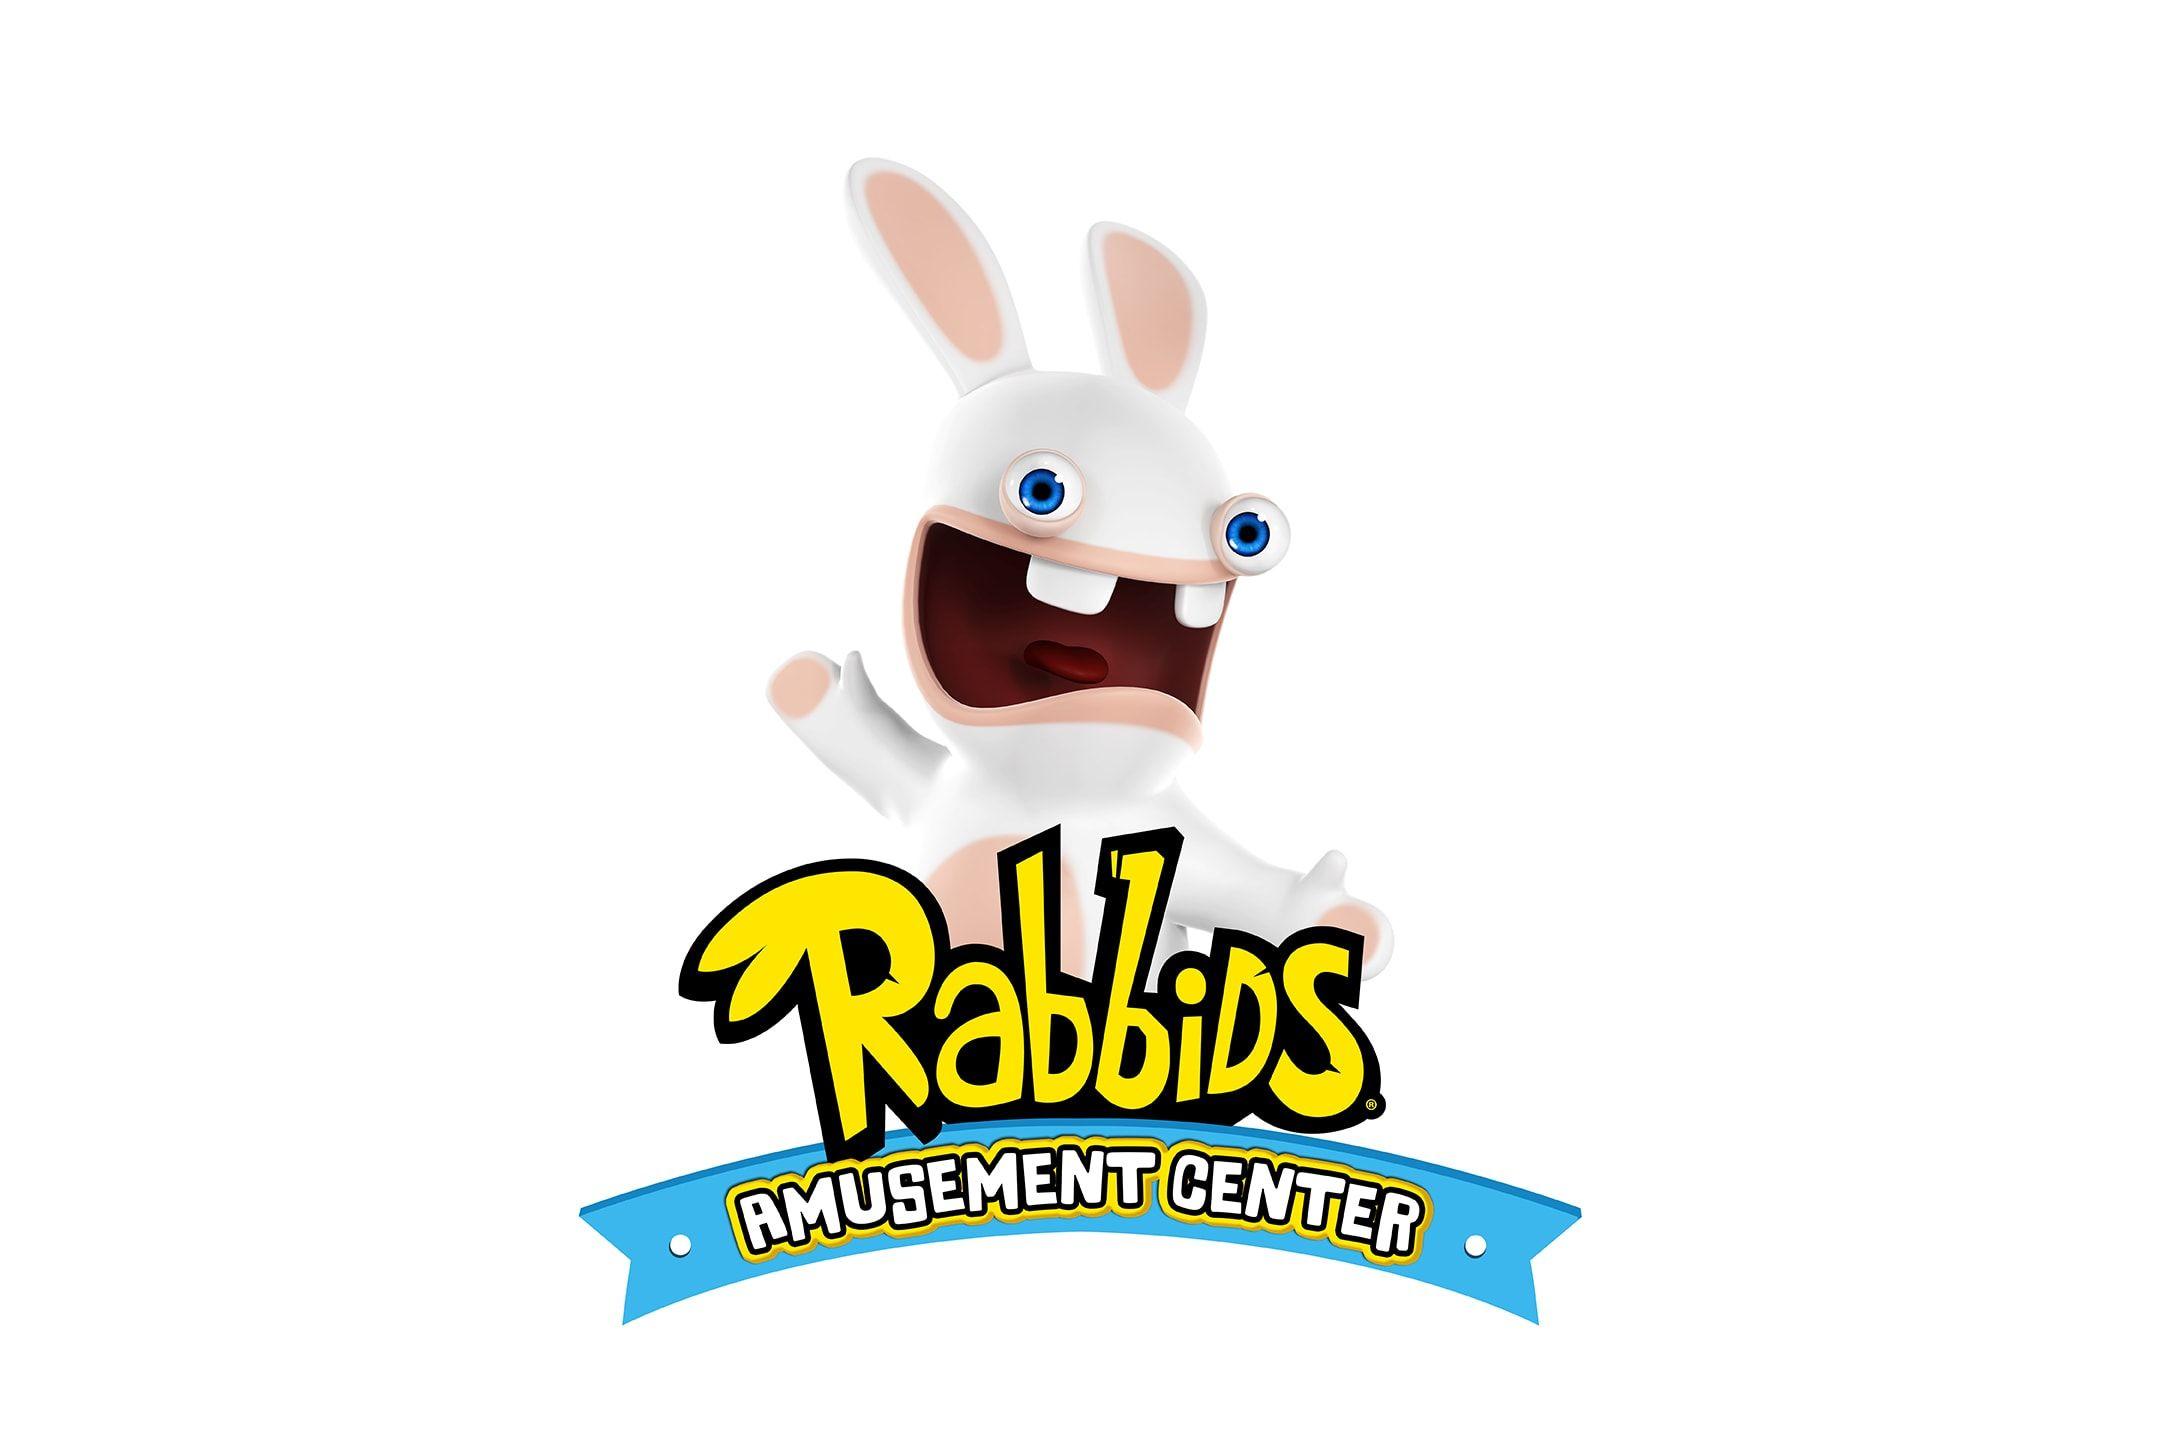 Amusement Center Logo - Montreal Opens Rabbids Amusement Center